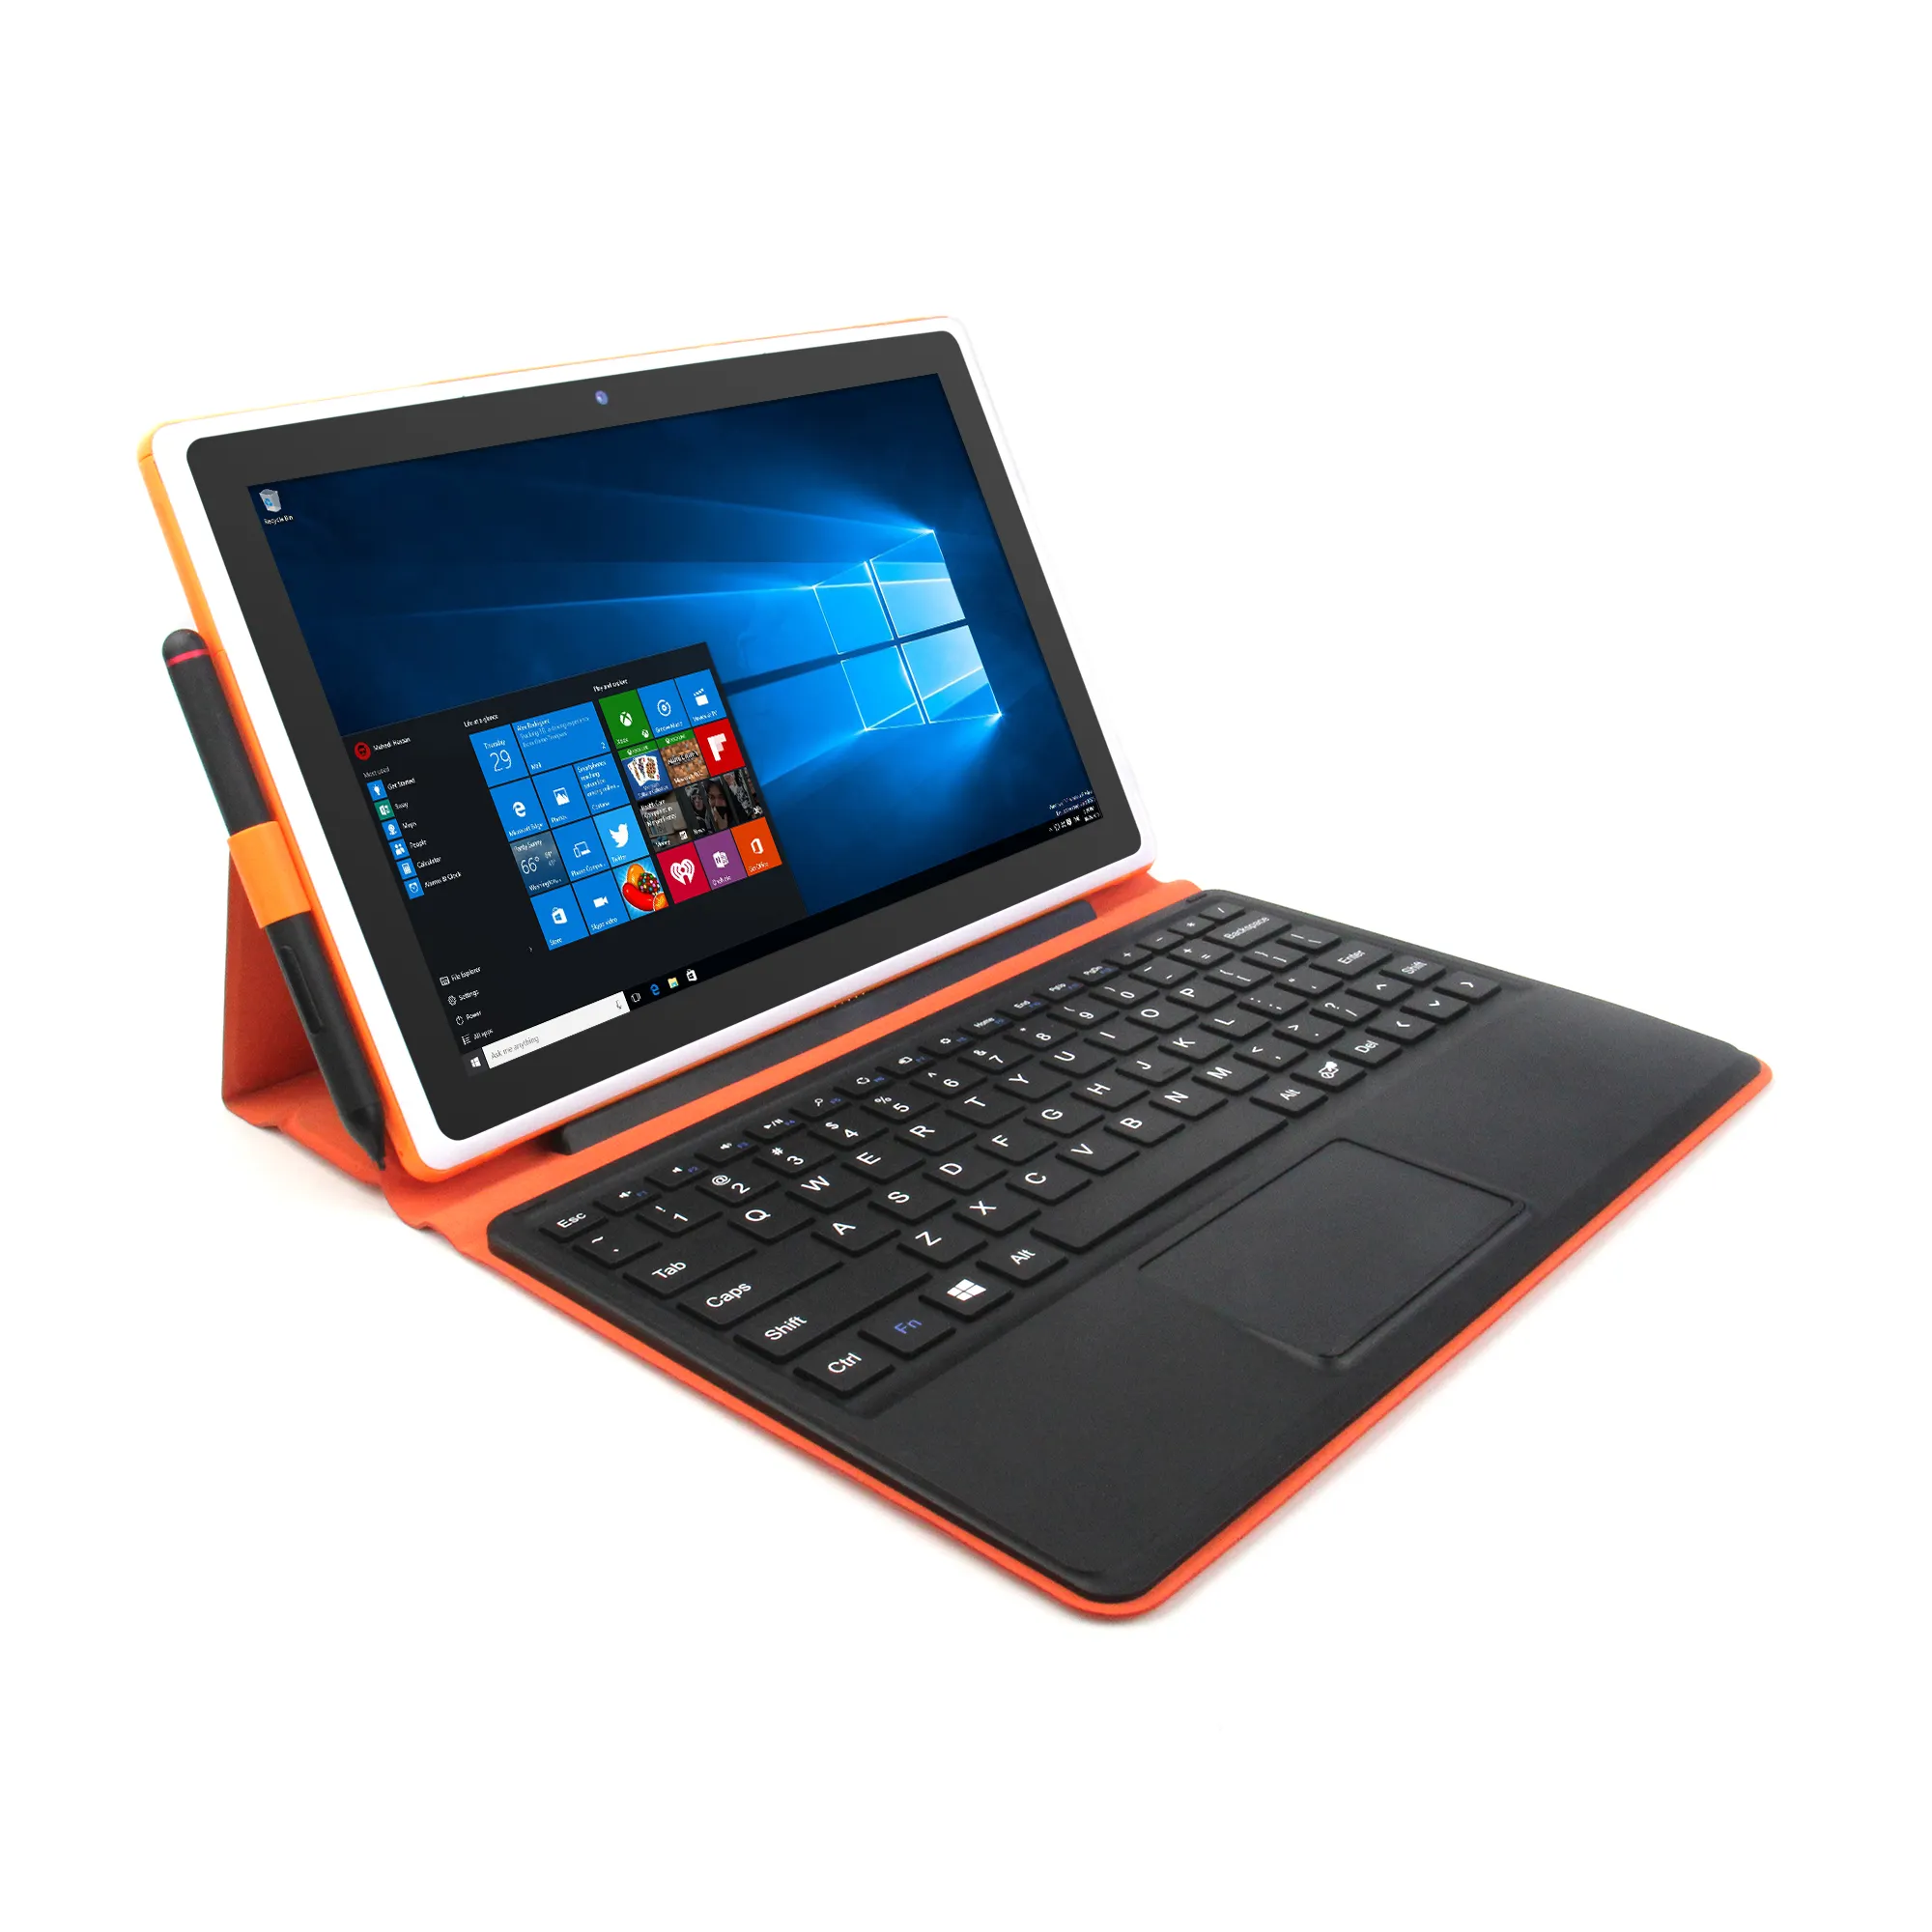 Son çıkan hızlı işlemci OEM PC Windows12 Tablet F1071YI 2in1 manyetik Tablet Windows12.0 Tablet gibi yüzey